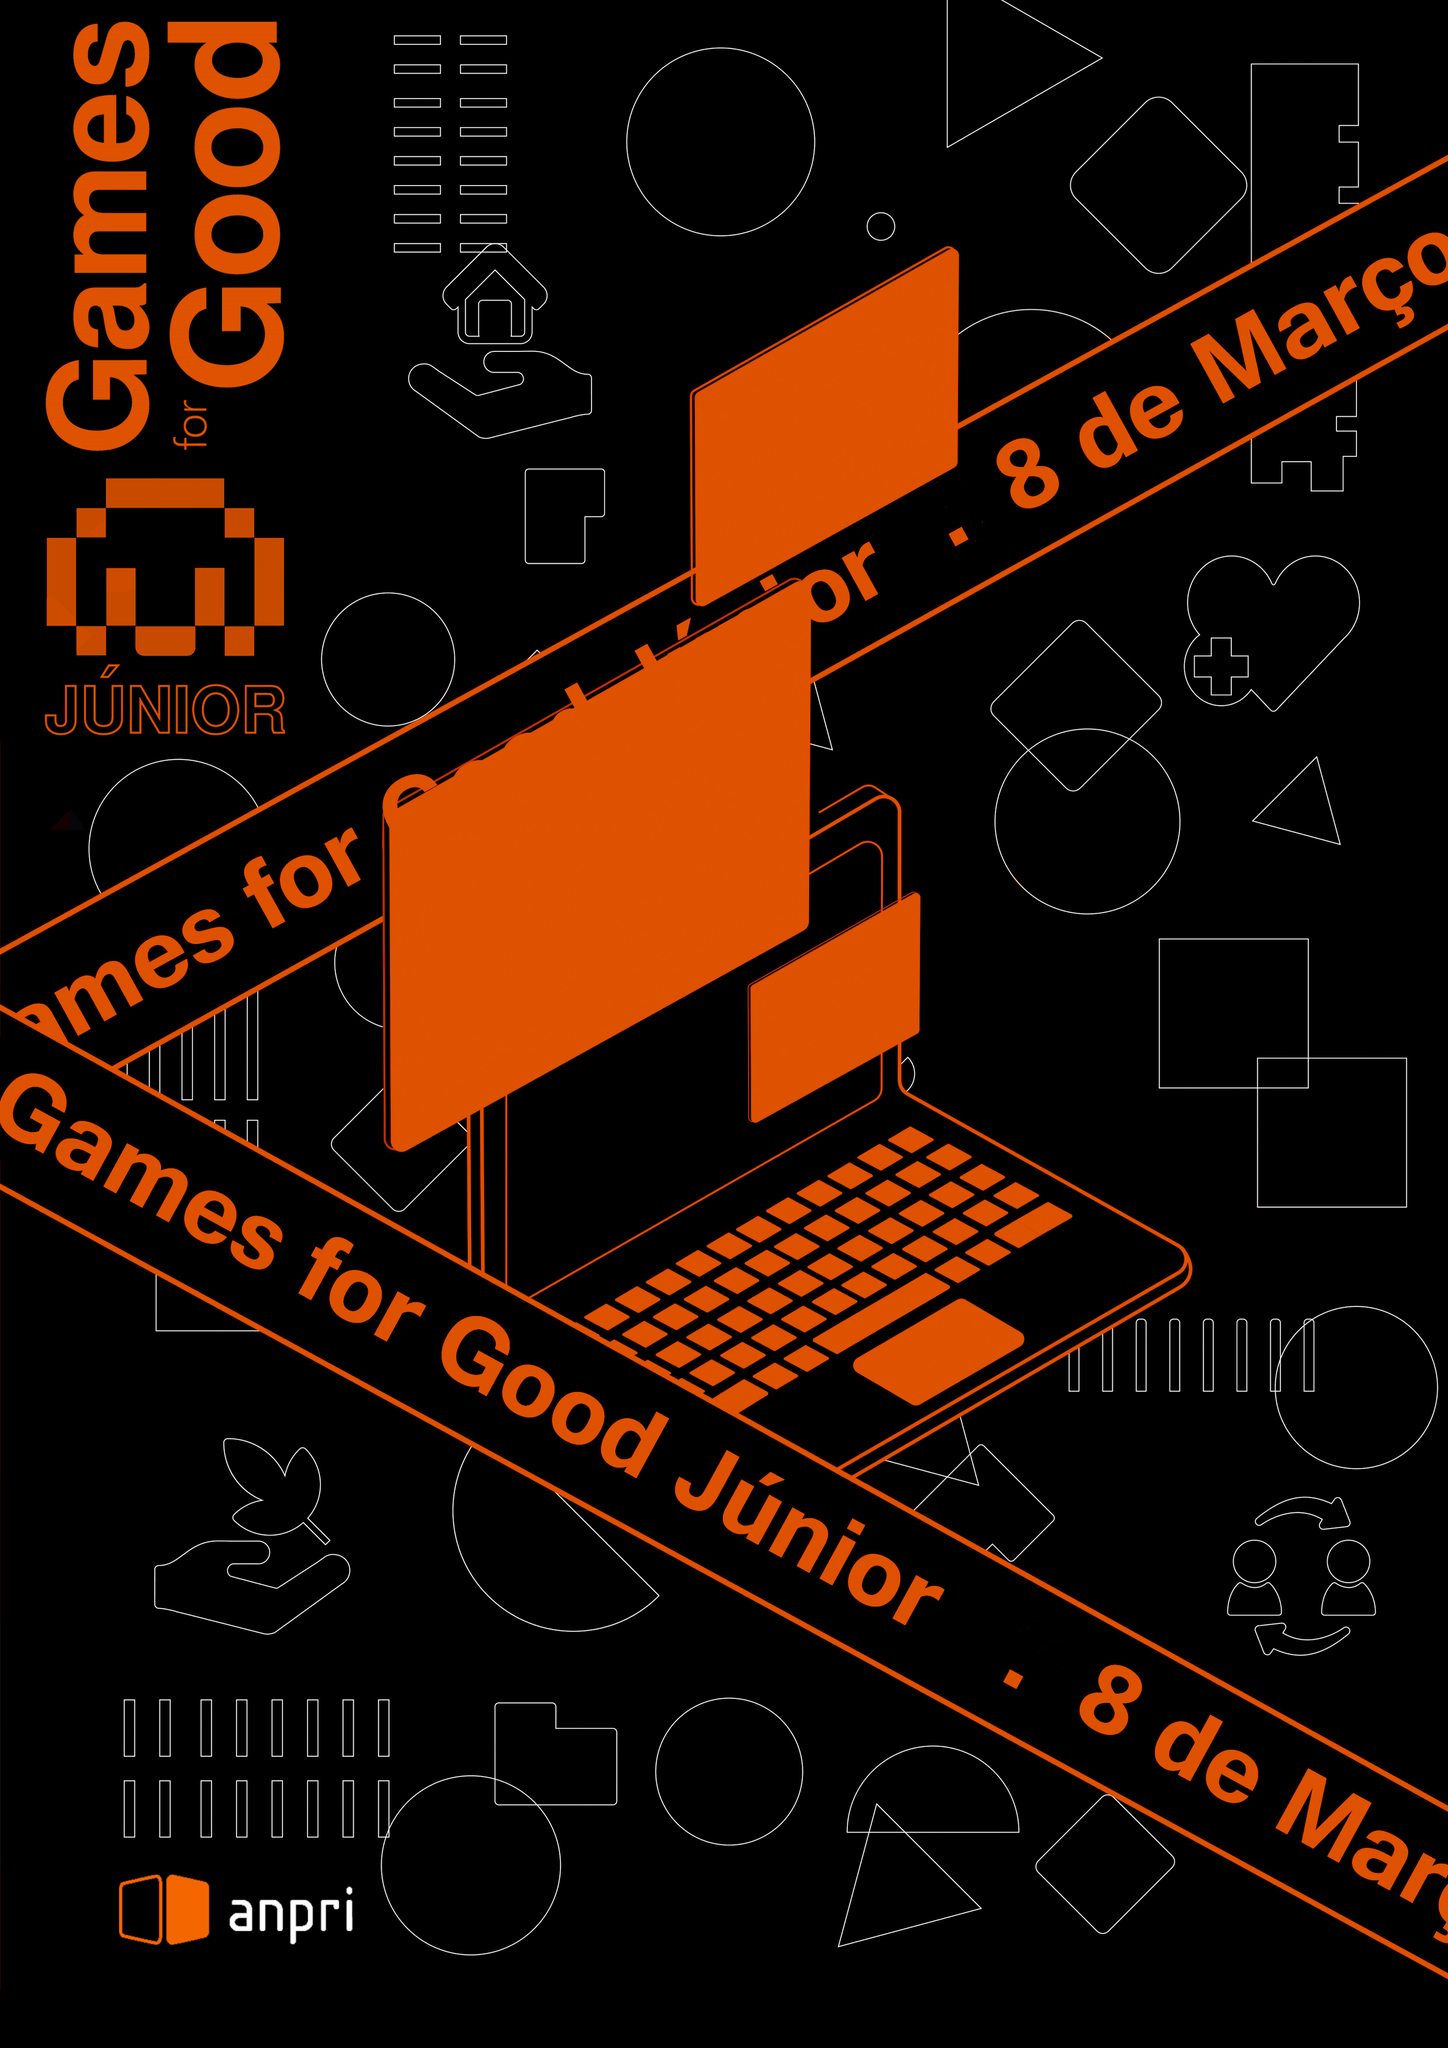 img_games_for_good.jpg